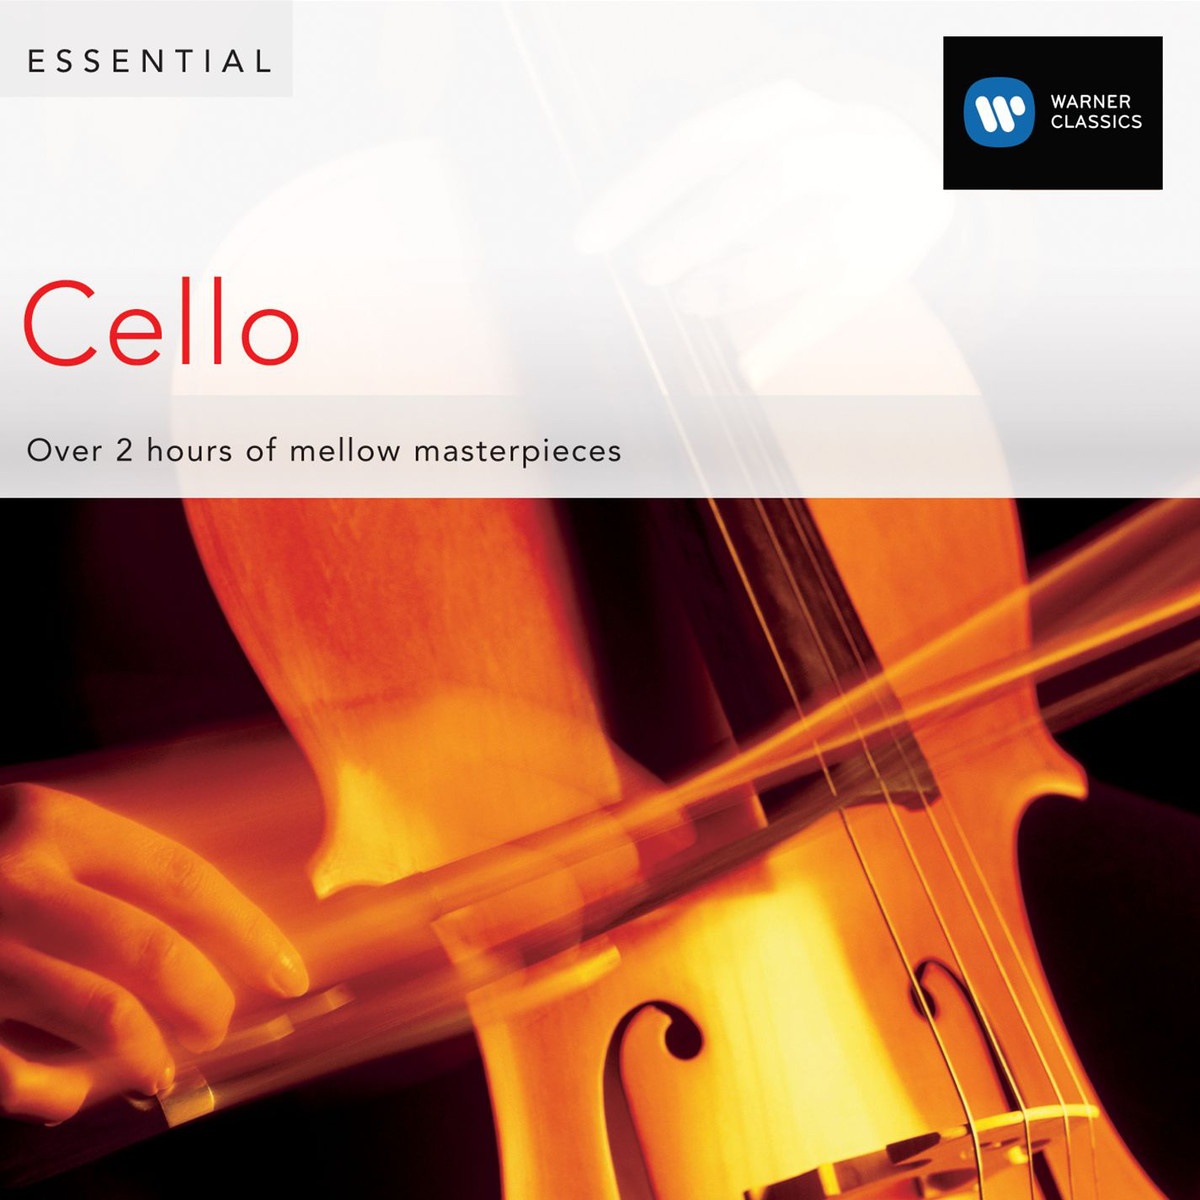 Cello Concerto in E minor Op. 85: I.       Adagio - moderato